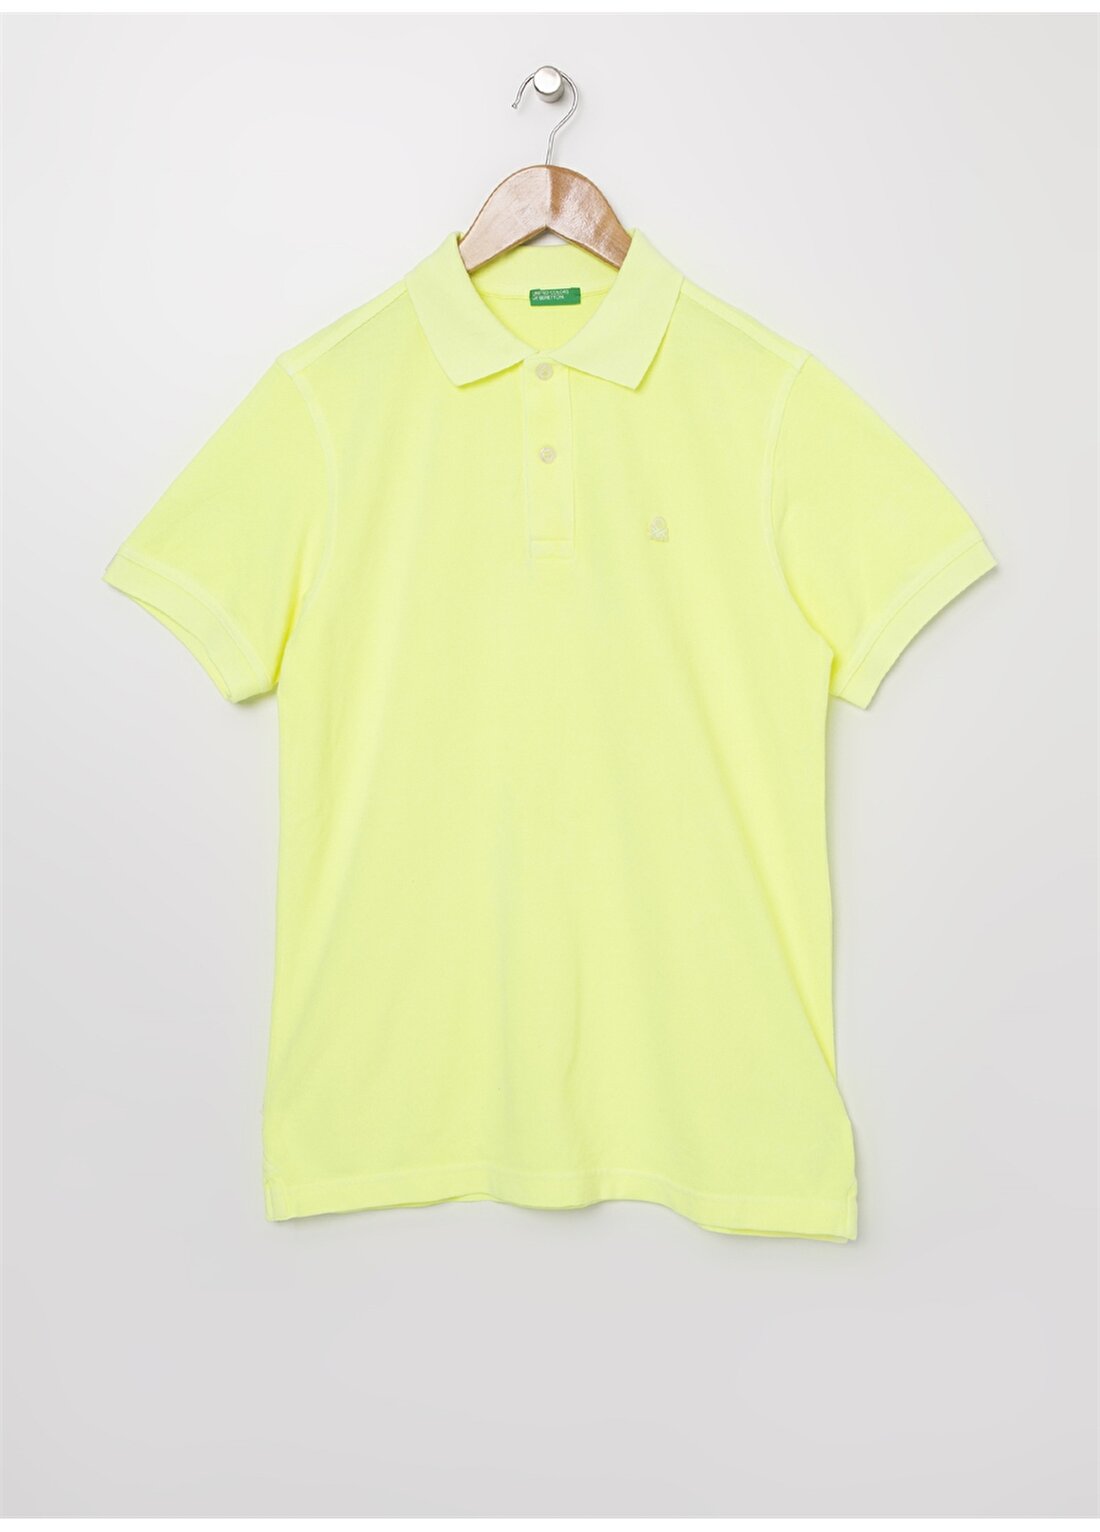 Benetton Erkek Çocuk Polo Yaka Neon Sarı T-Shirt